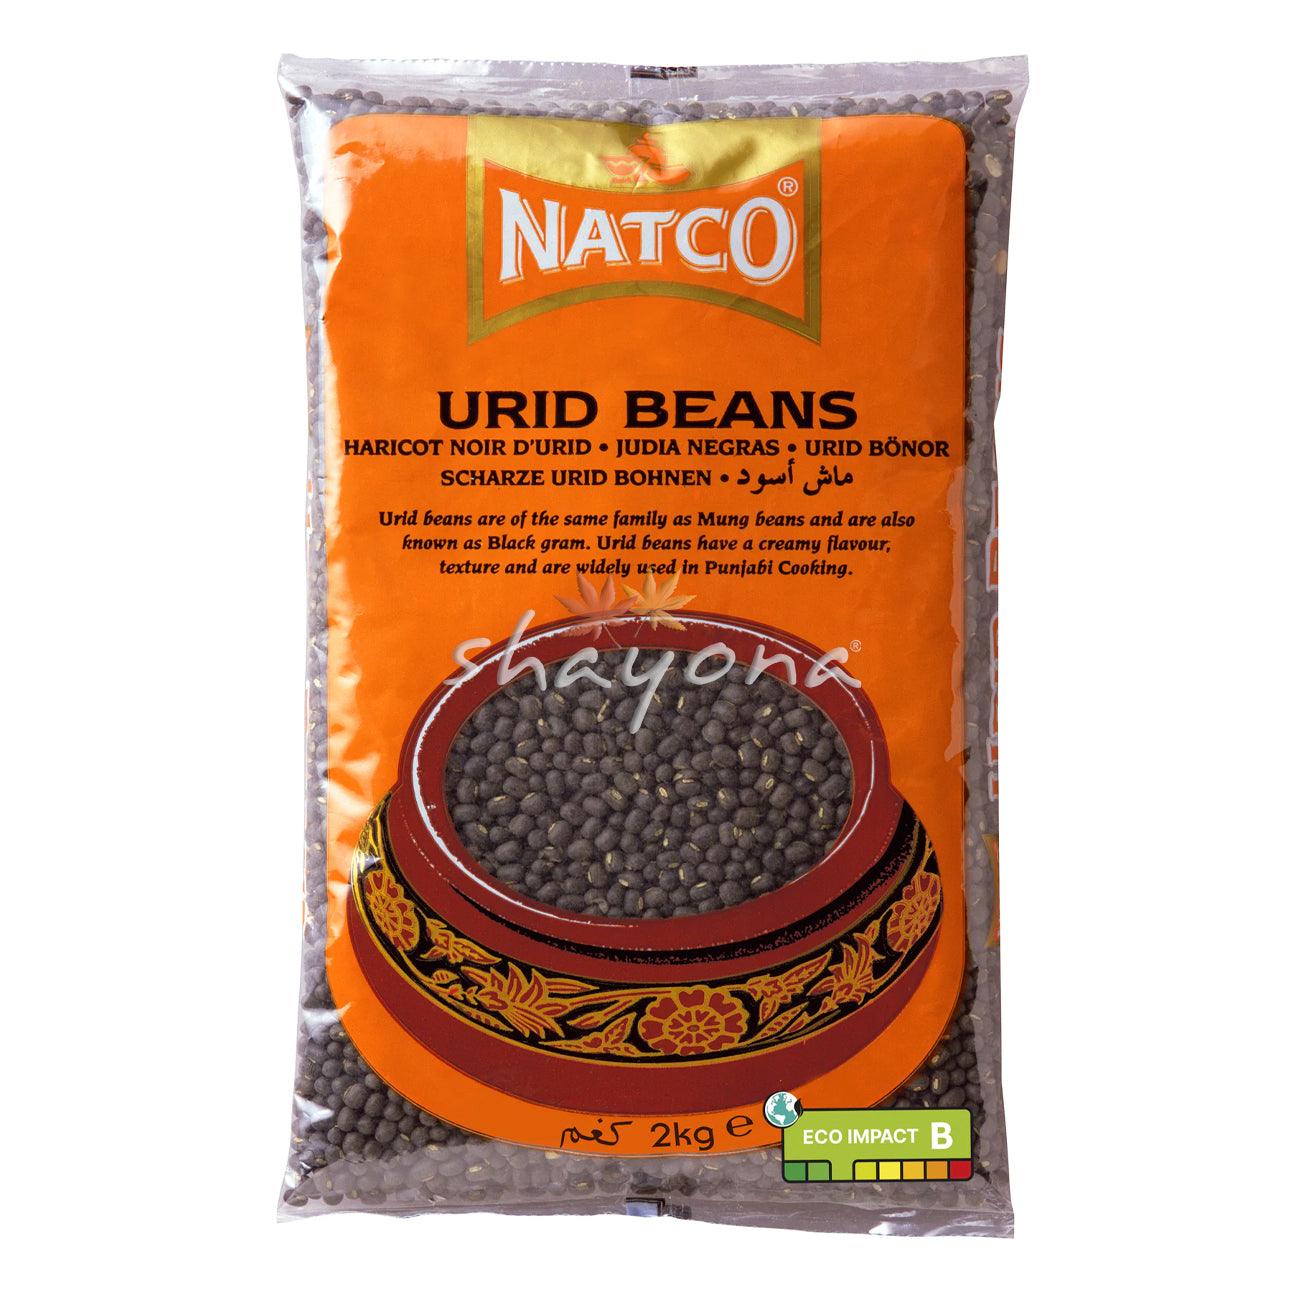 Natco Urid Beans - Shayona UK